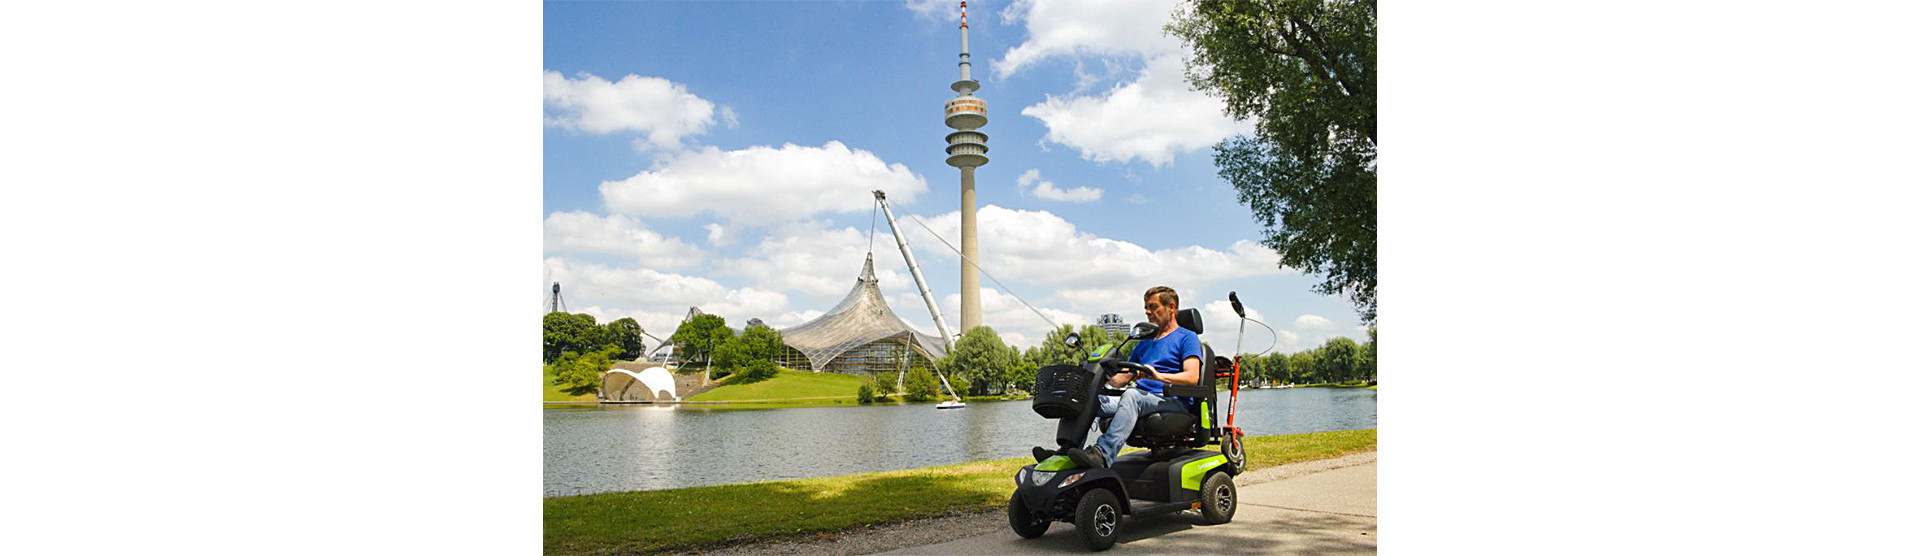 MOBILITÄT FÜR ALLE - ein kostenfreier Service der Stadt München in Kooperation mit dem Behindertenbeirat